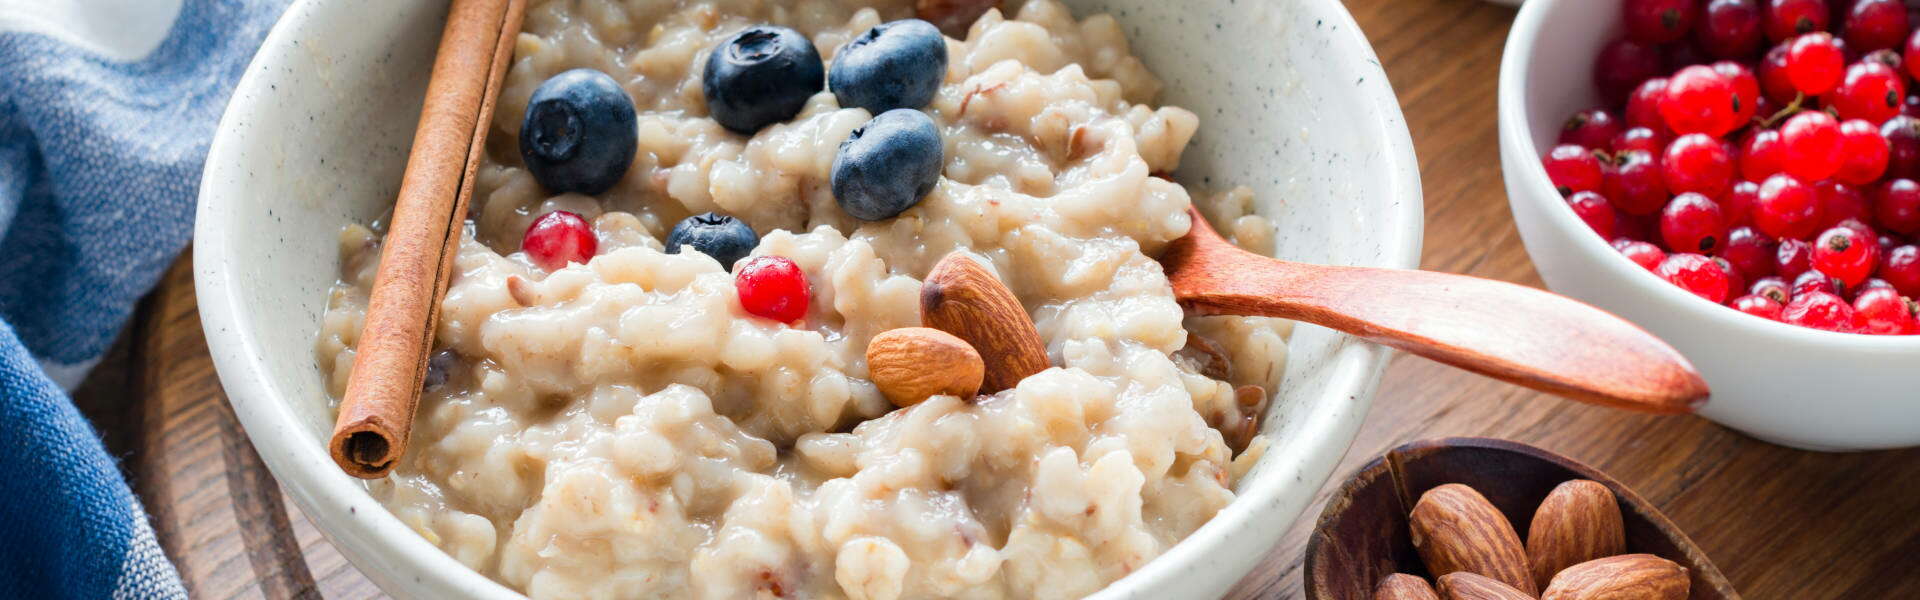 Porridge: pourquoi le recommandent-ils? Est-ce vraiment si bon?